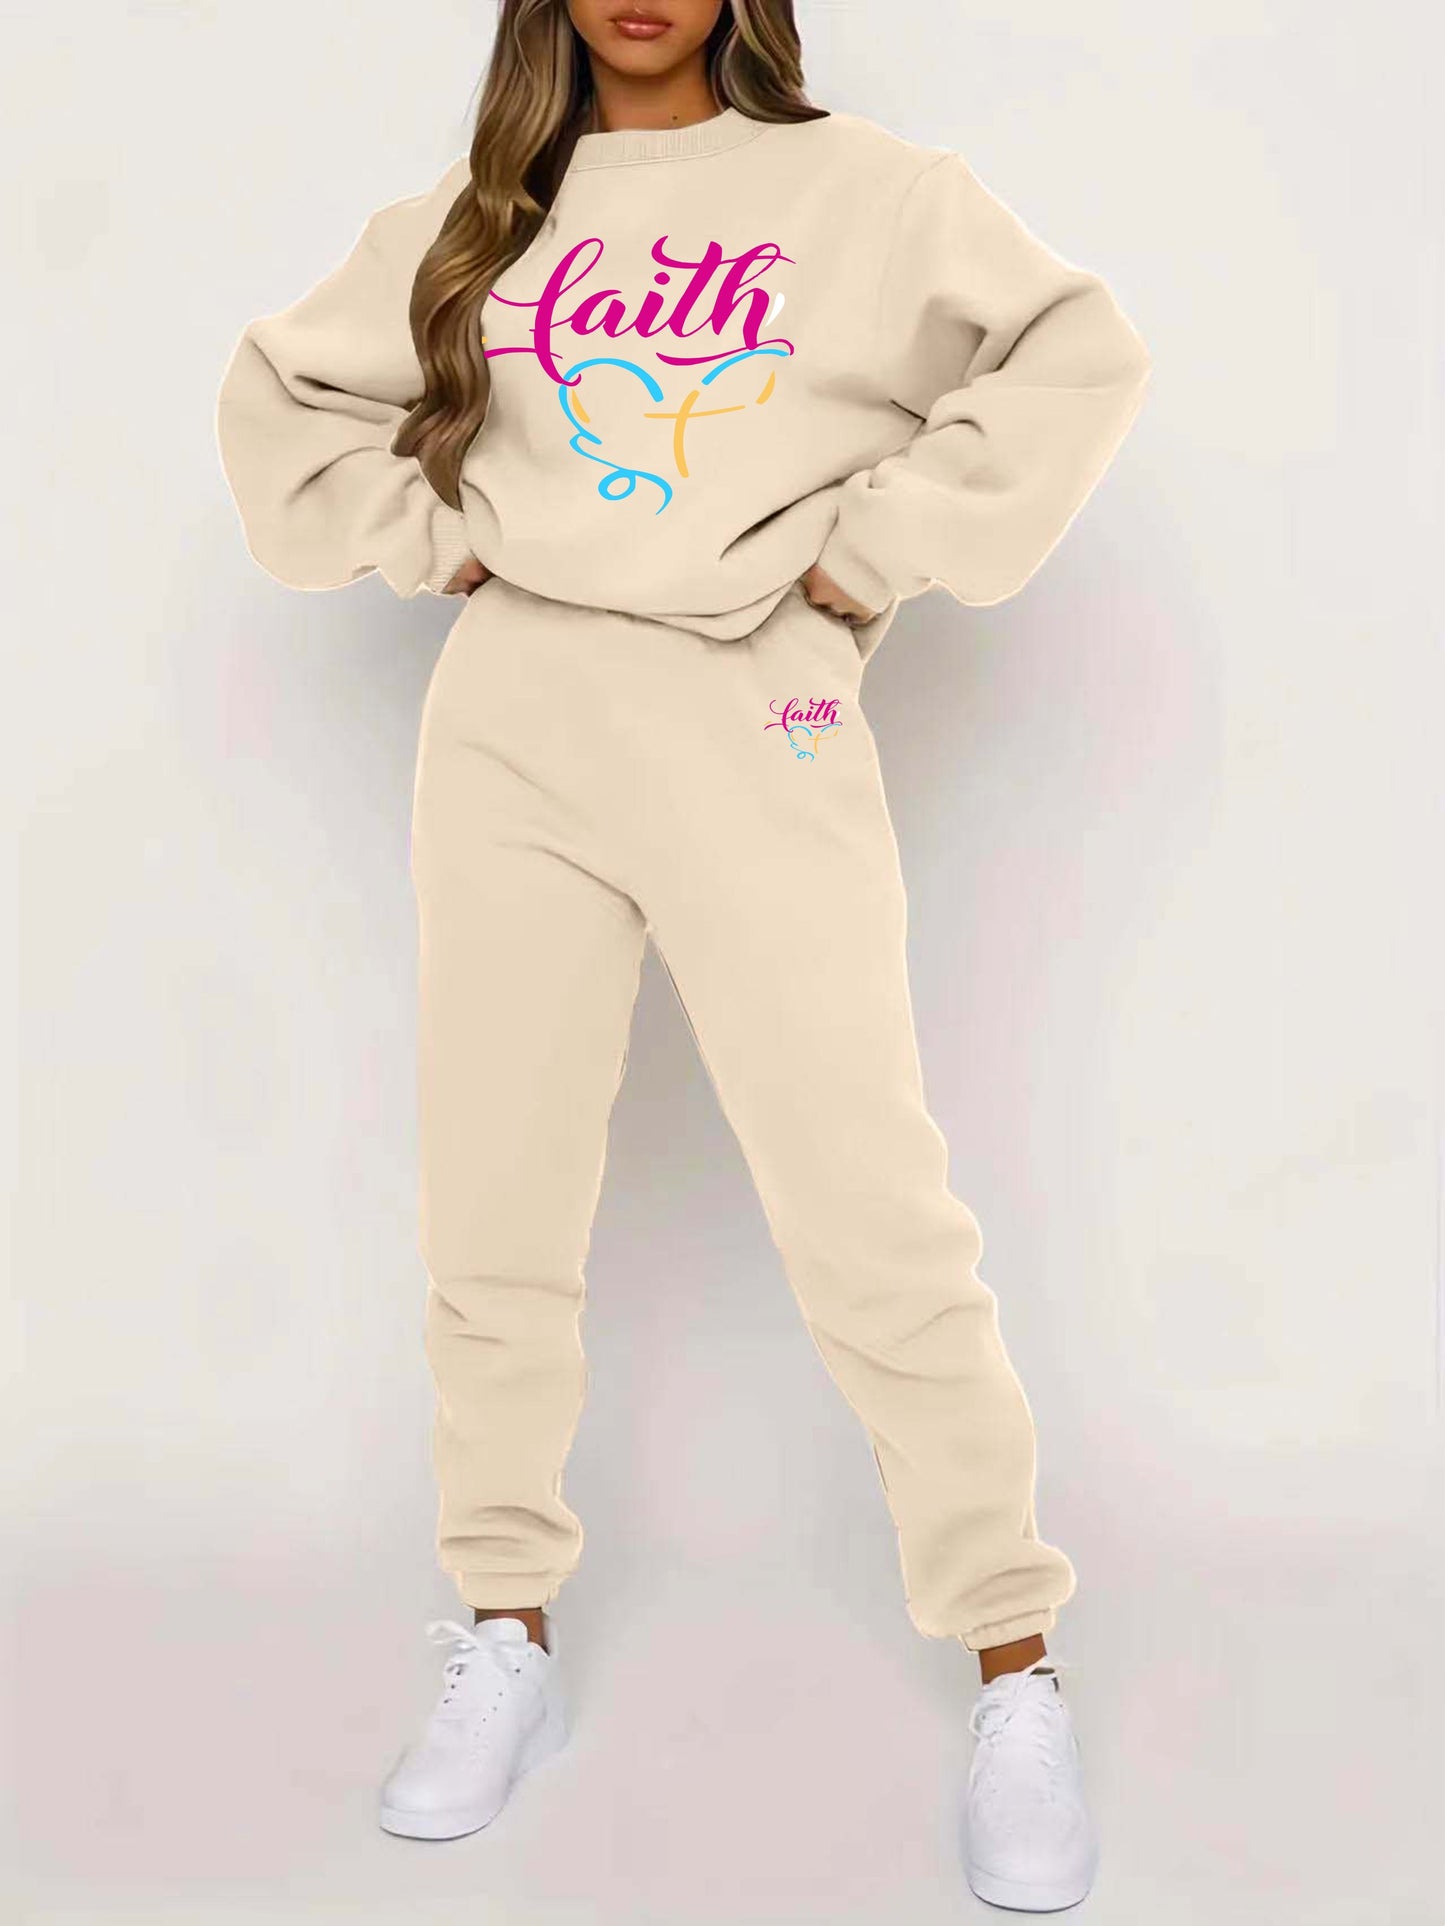 Faith (heart) Women's Christian Casual Outfit claimedbygoddesigns